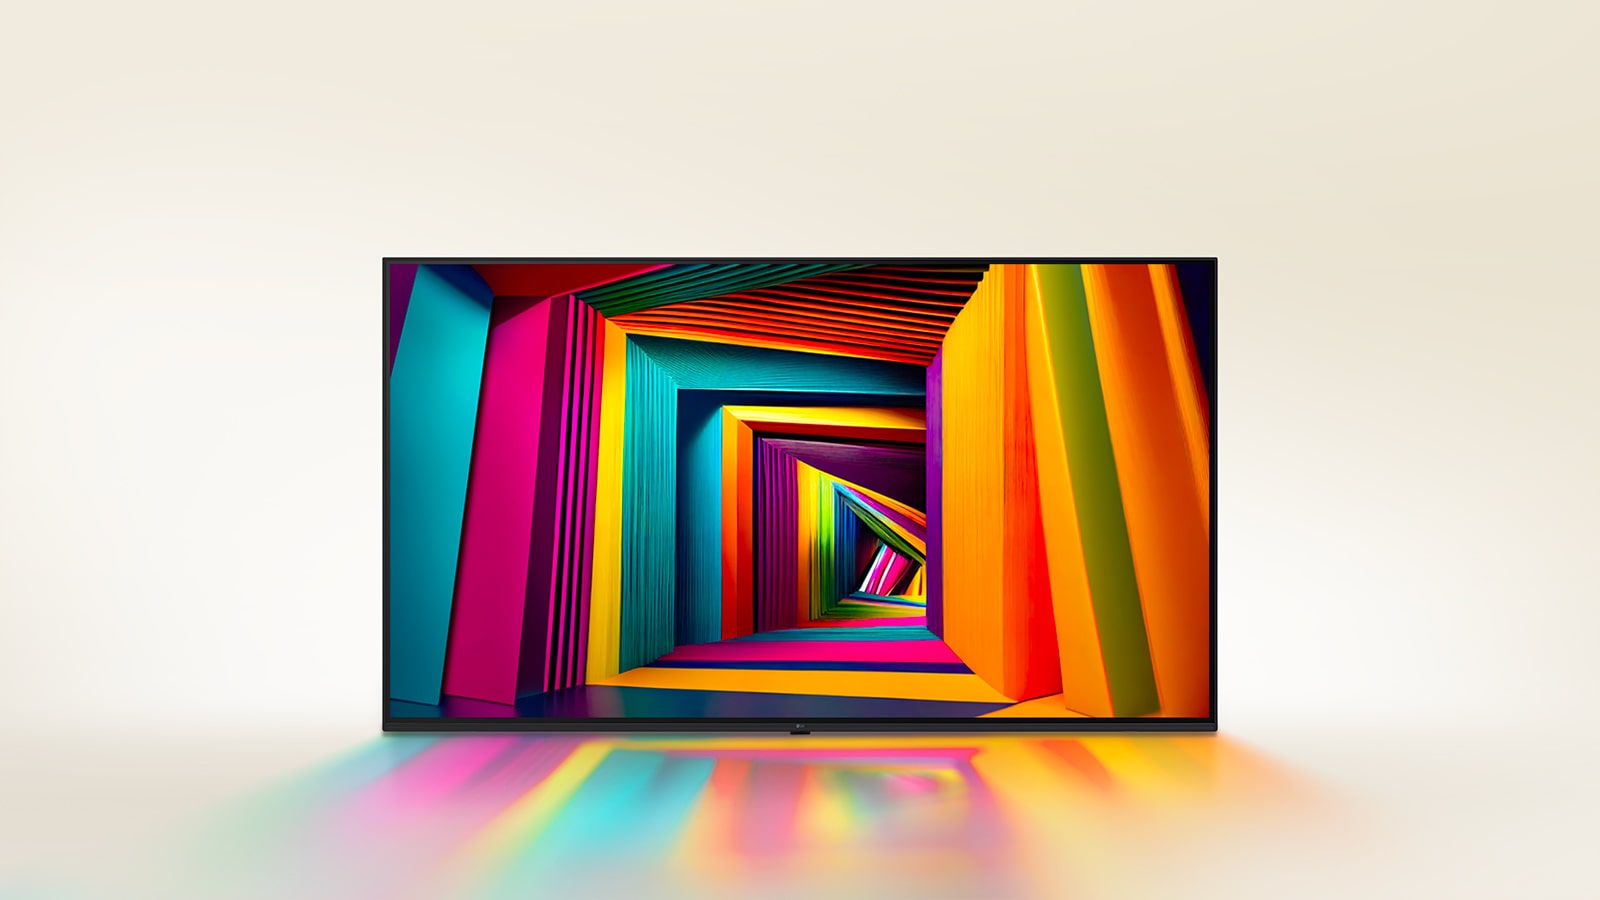 Ein farbenfroher, quadratischer Tunnel, der nach hinten hin immer schmaler wird, dargestellt auf einem LG Fernseher.	